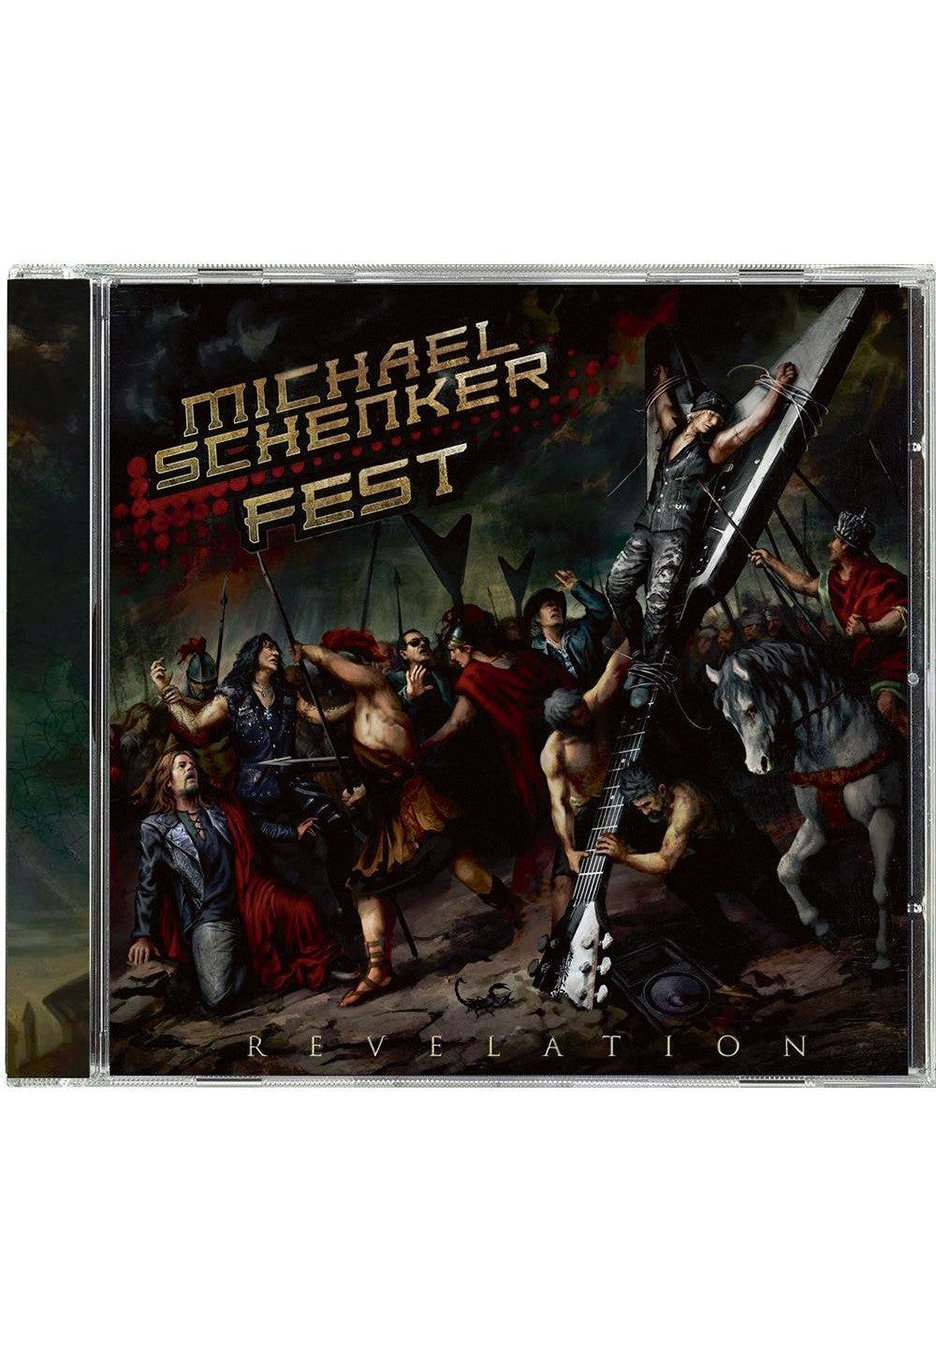 Michael Schenker Fest - Revelation - CD